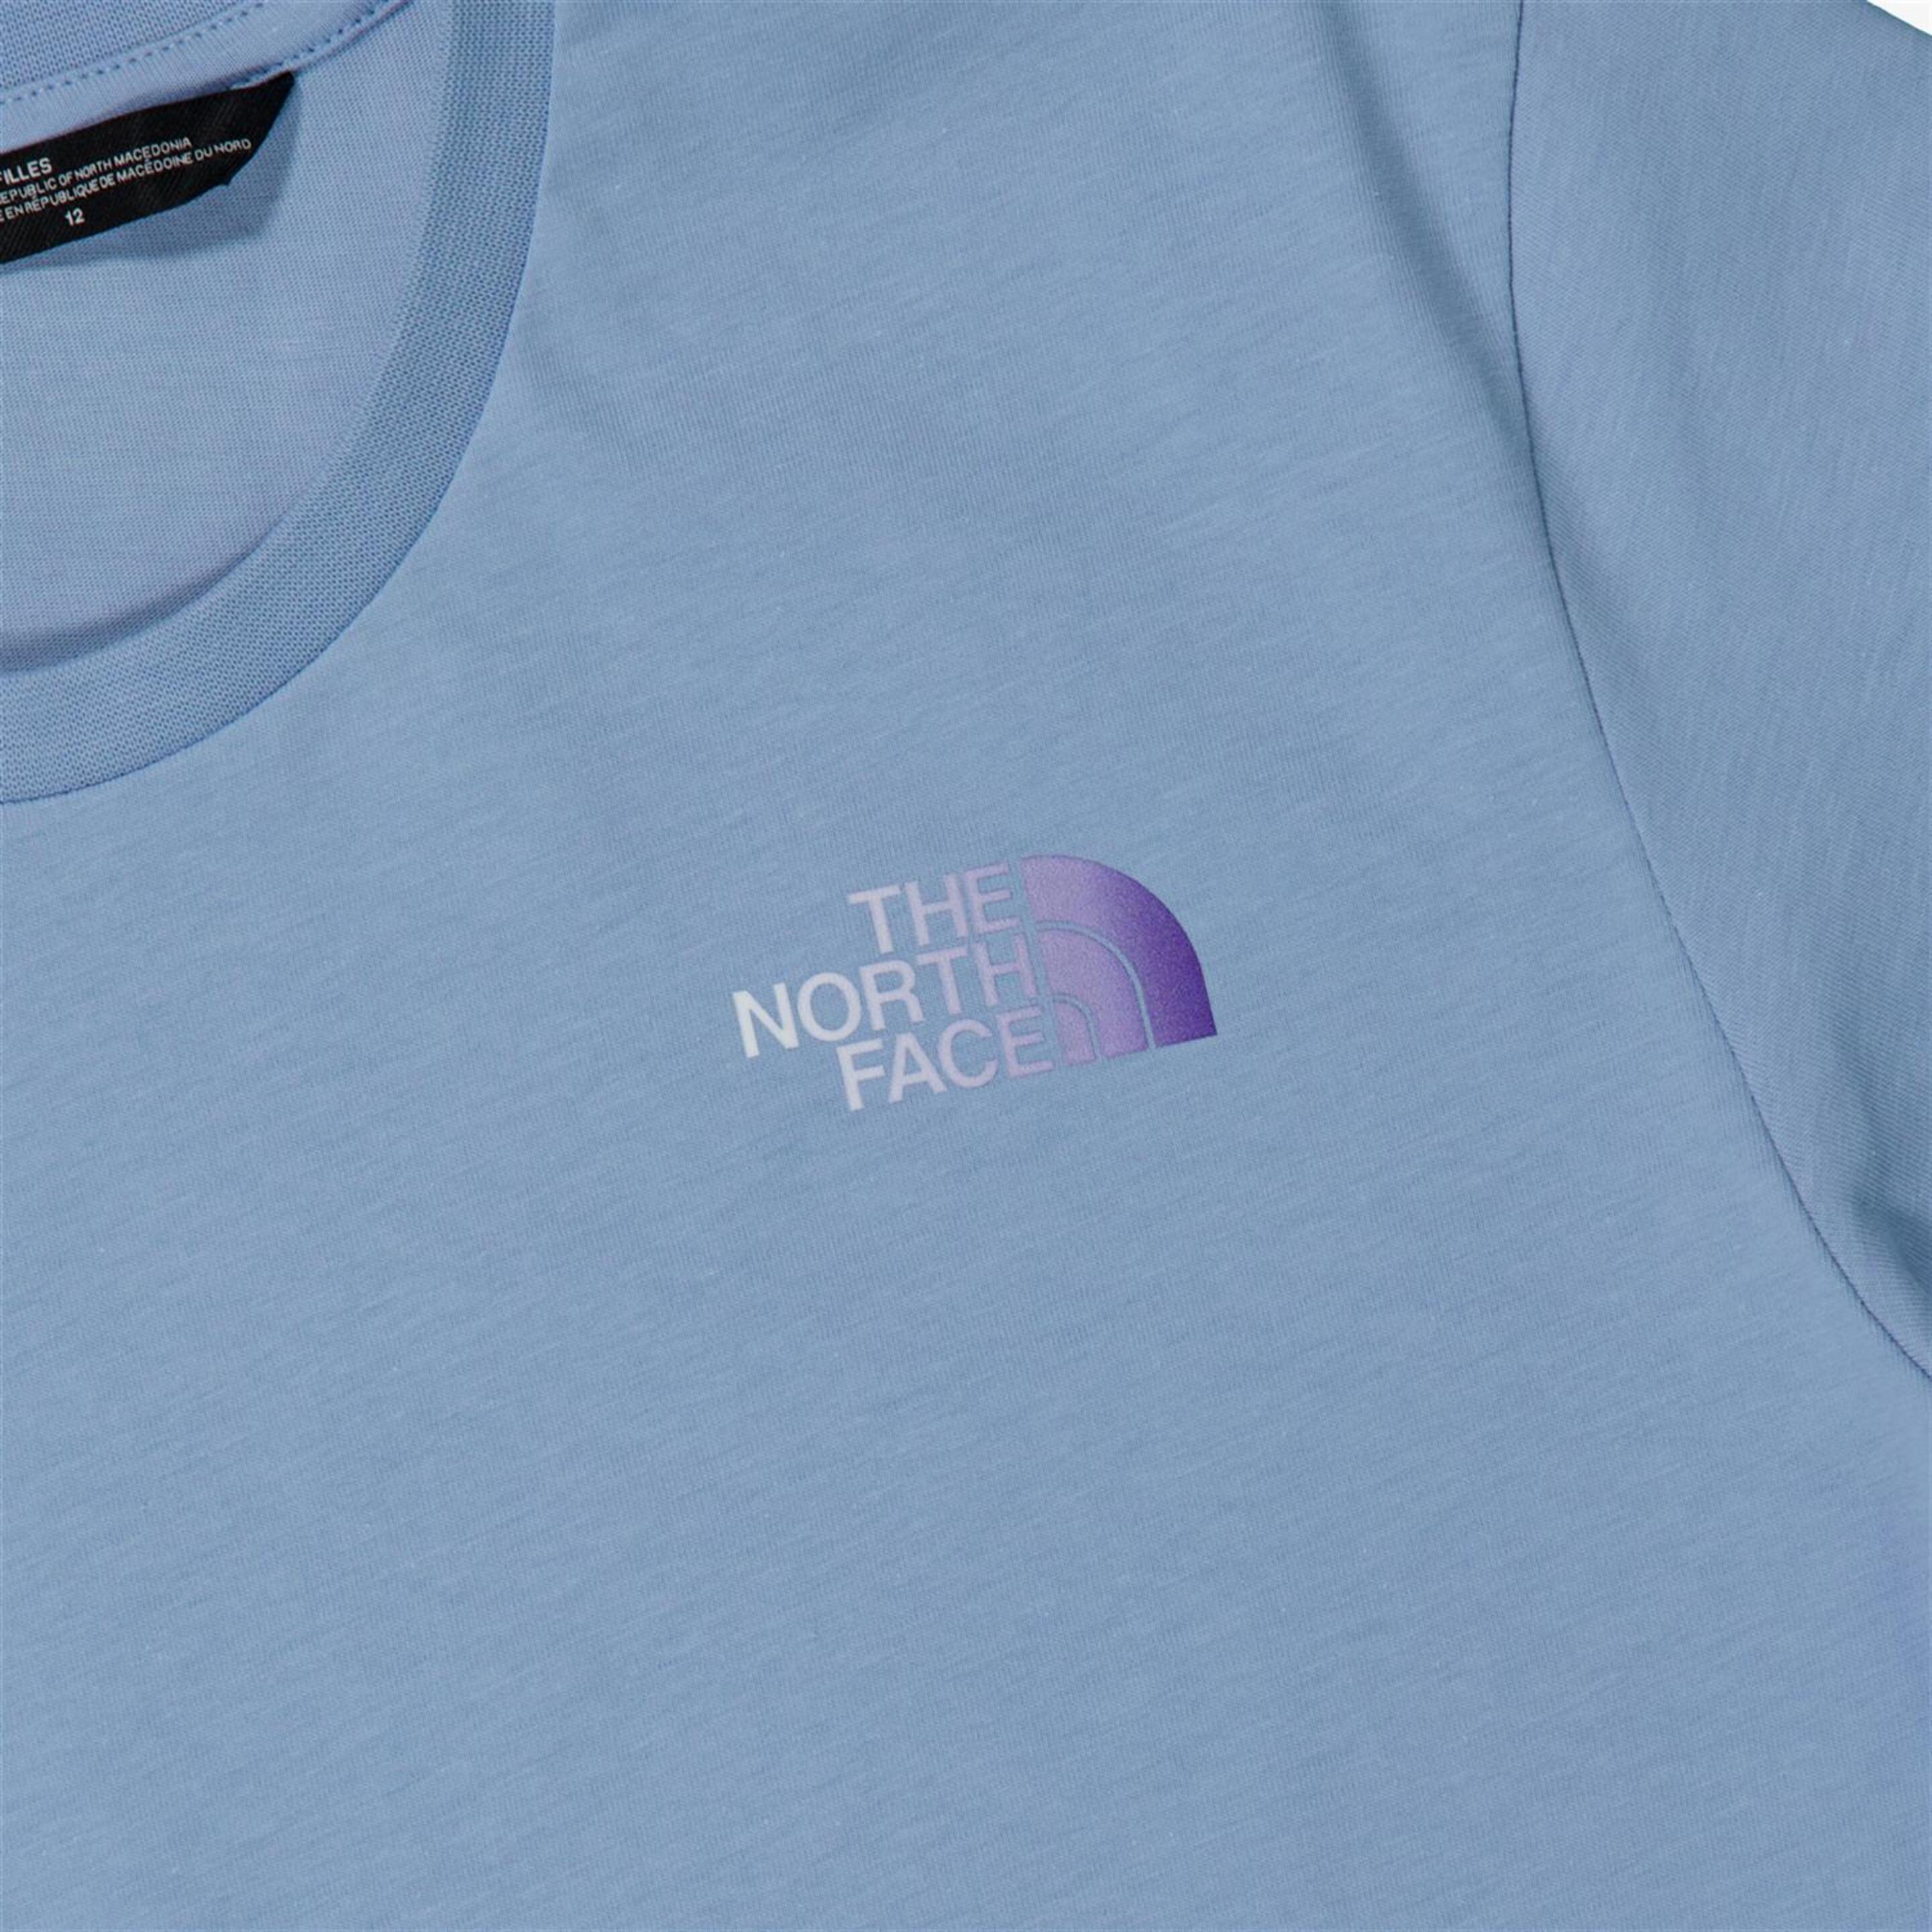 The North Face Relaxed Graphic 2 - Azul - Camiseta Trekking Niña